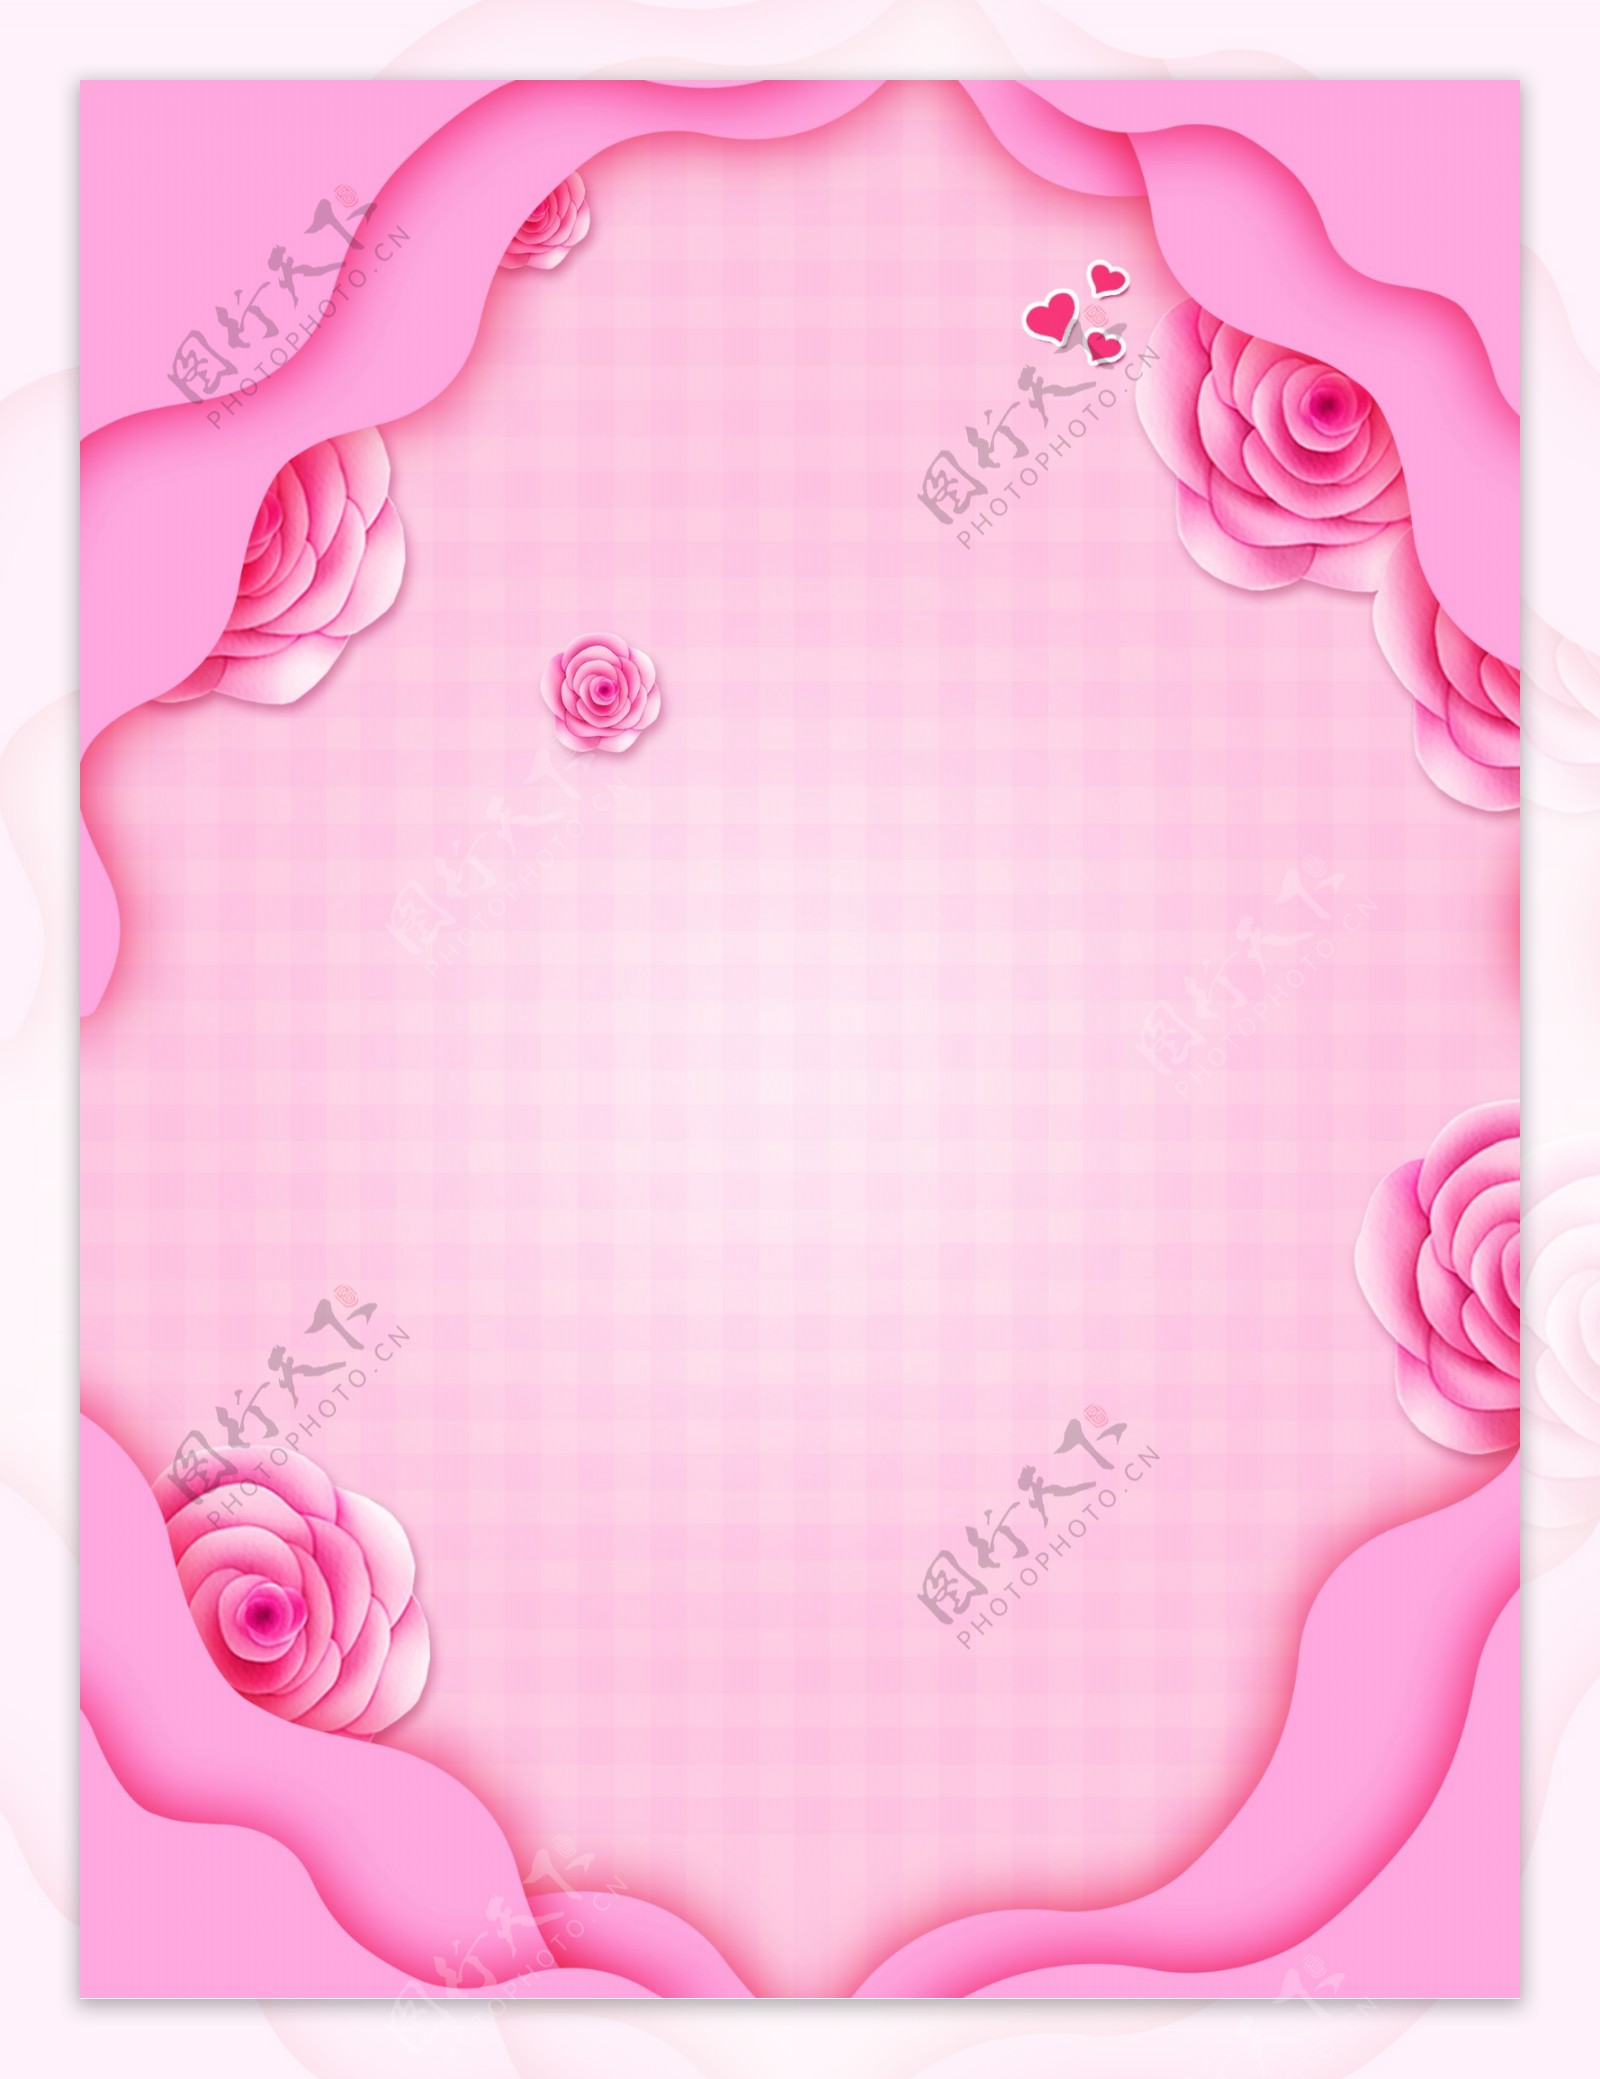 浪漫粉色玫瑰花花边广告背景